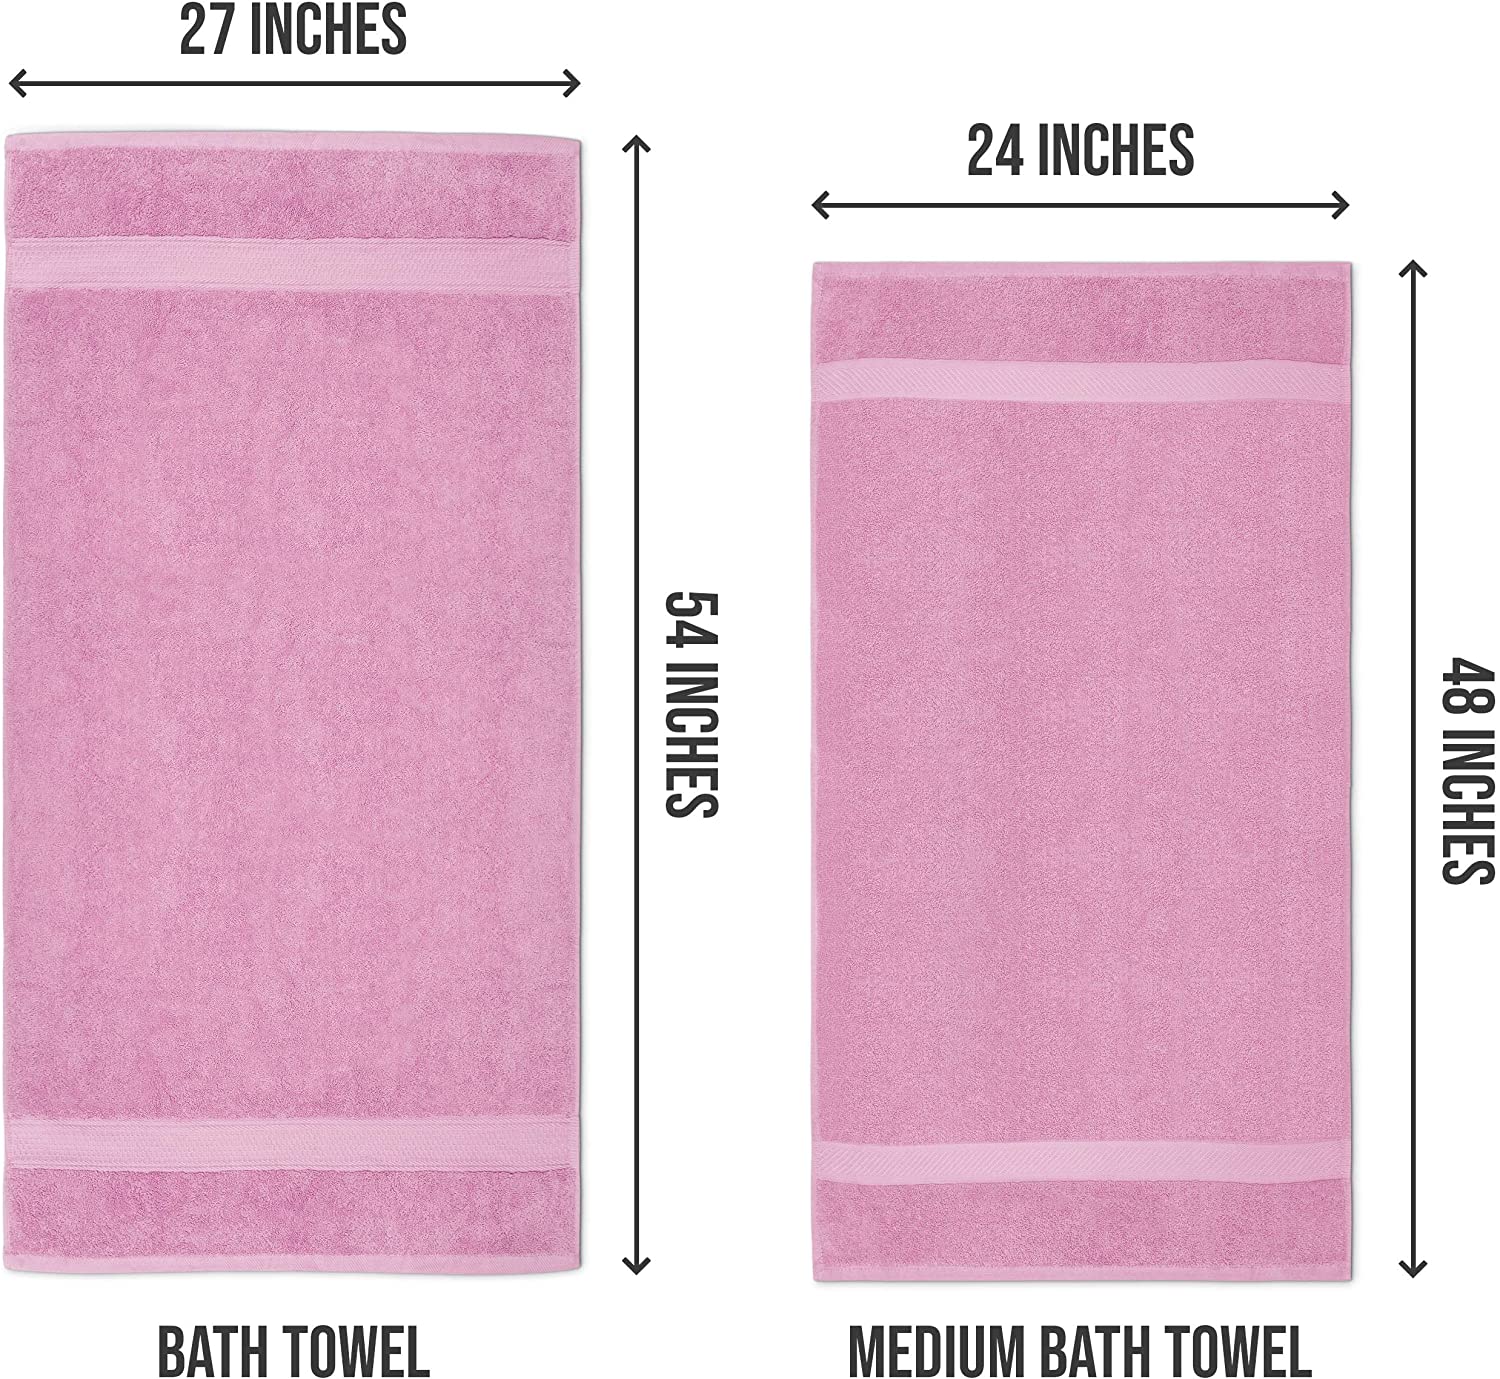 Utopia Towels 100% Cotton White Bath Towels Set (6 Pack, 22 x 44